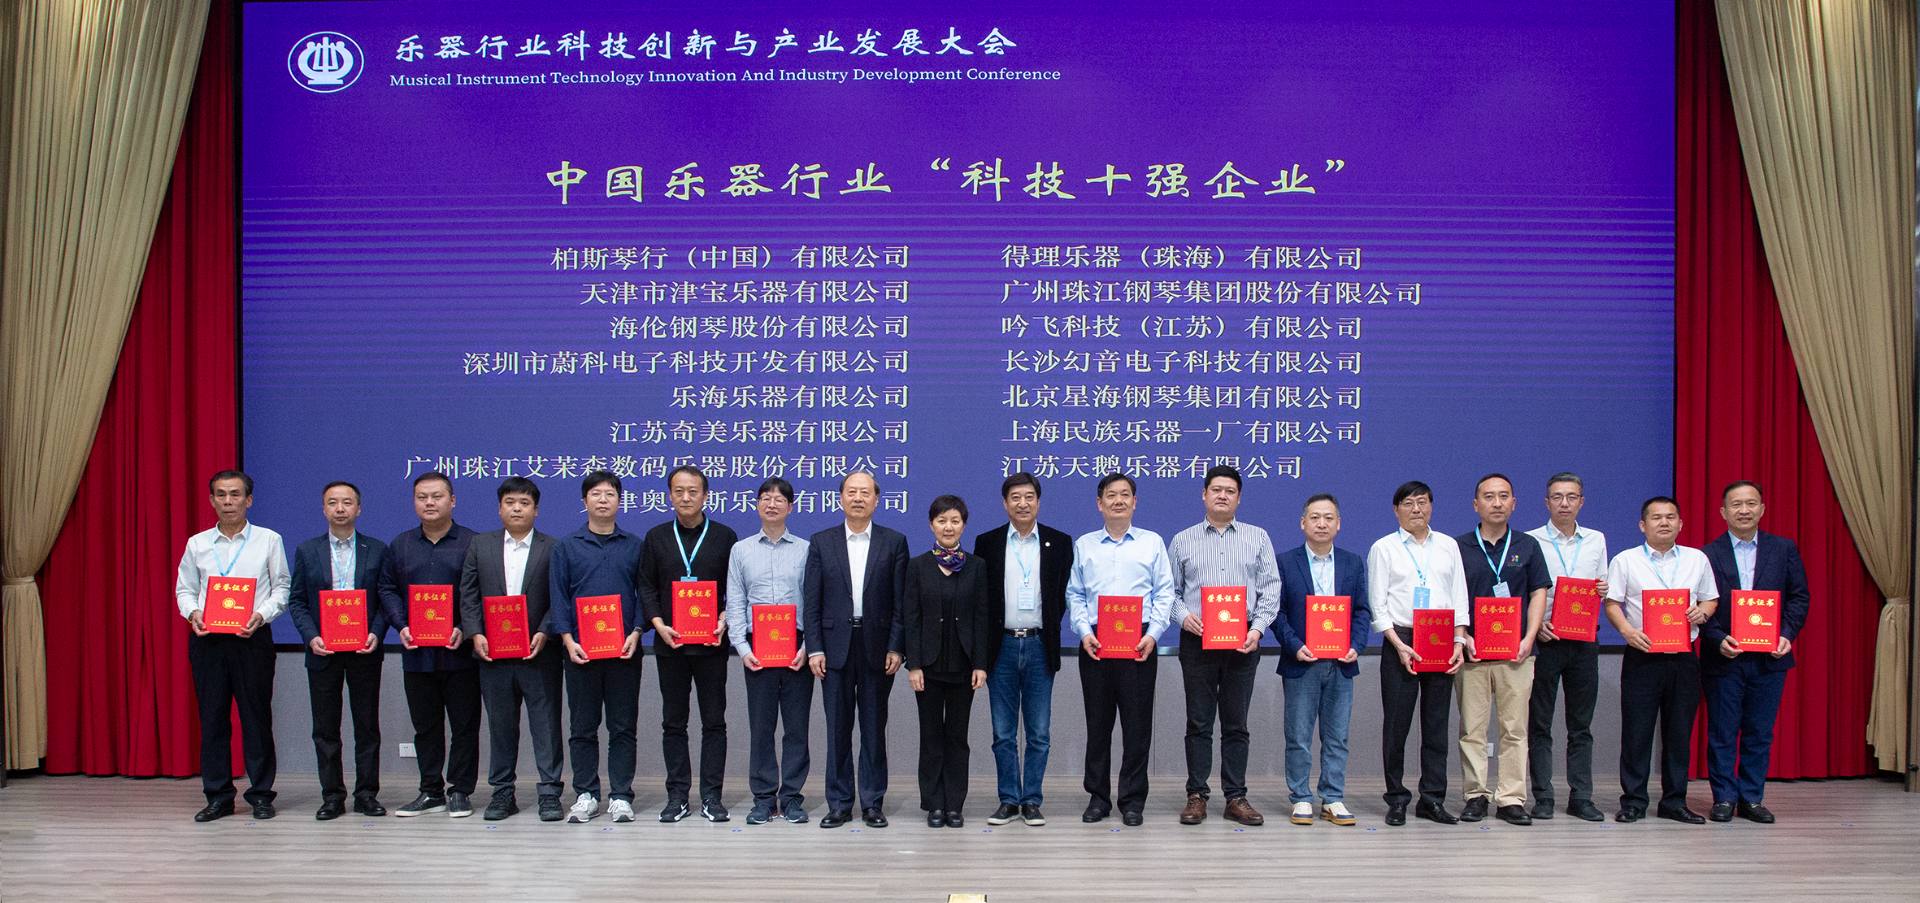 柏斯音乐荣获中国乐器行业 “科技创新”5项大奖！